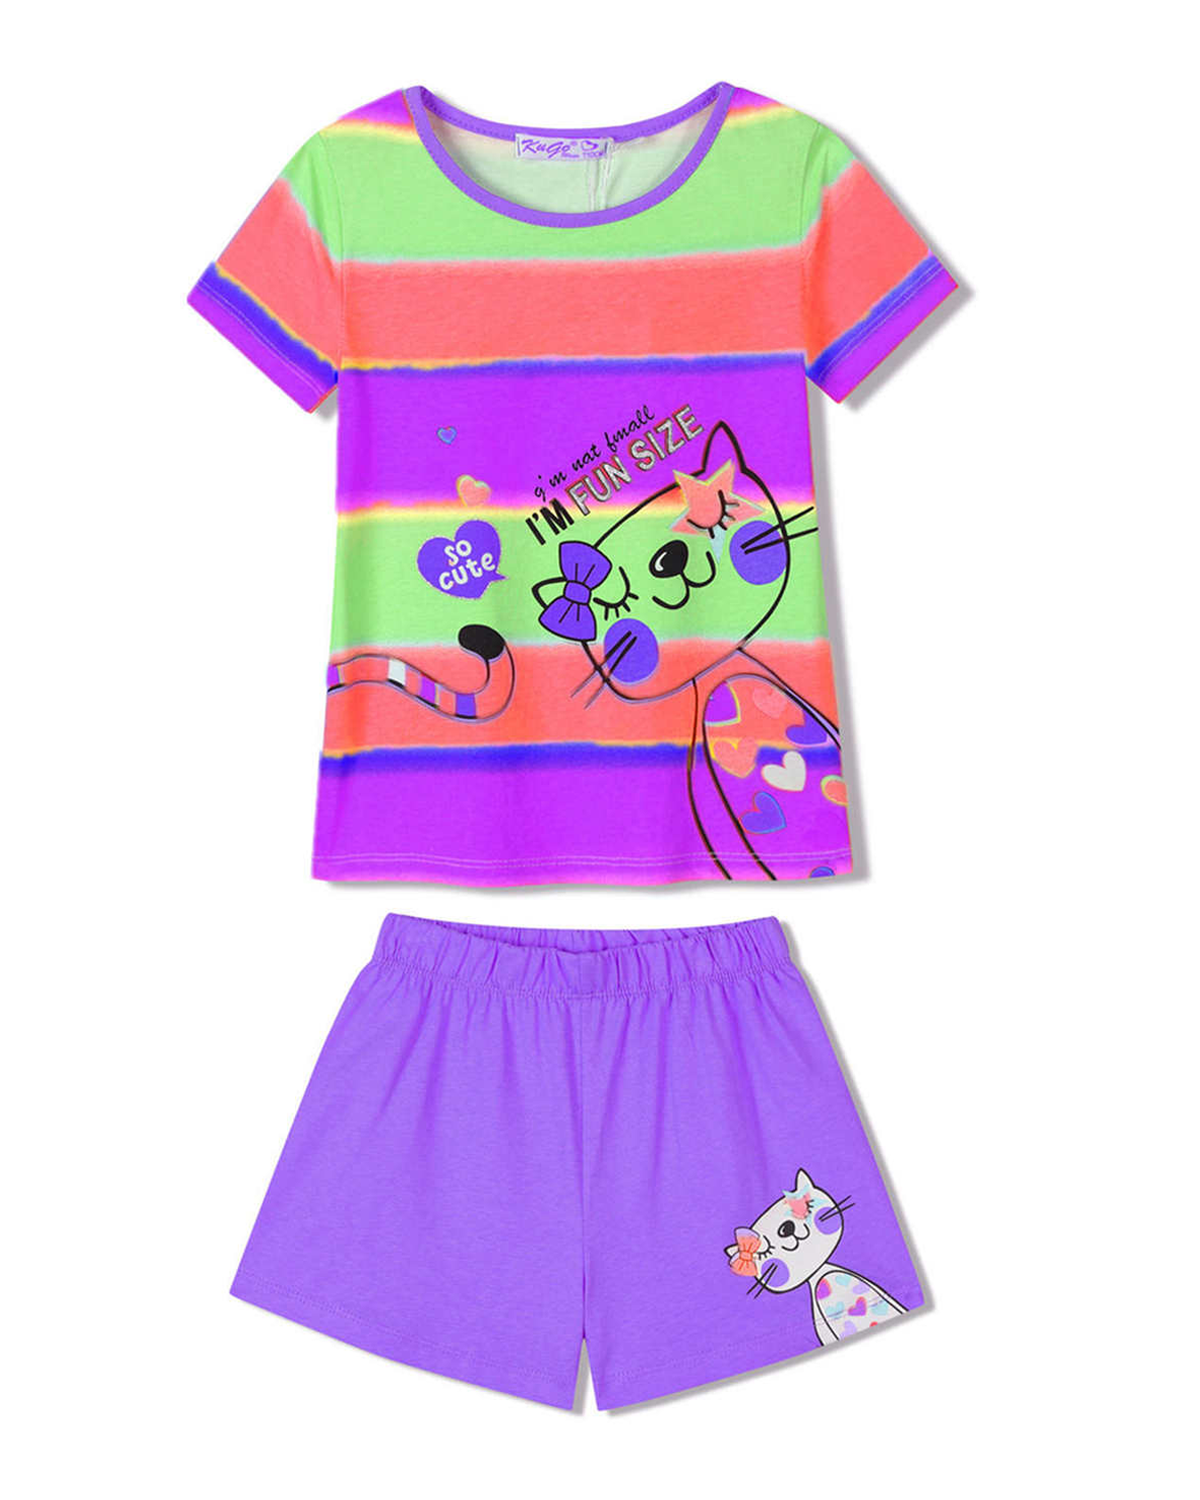 Dívčí pyžamo - KUGO SH3515, mix barev / fialkové kraťasy Barva: Mix barev, Velikost: 98